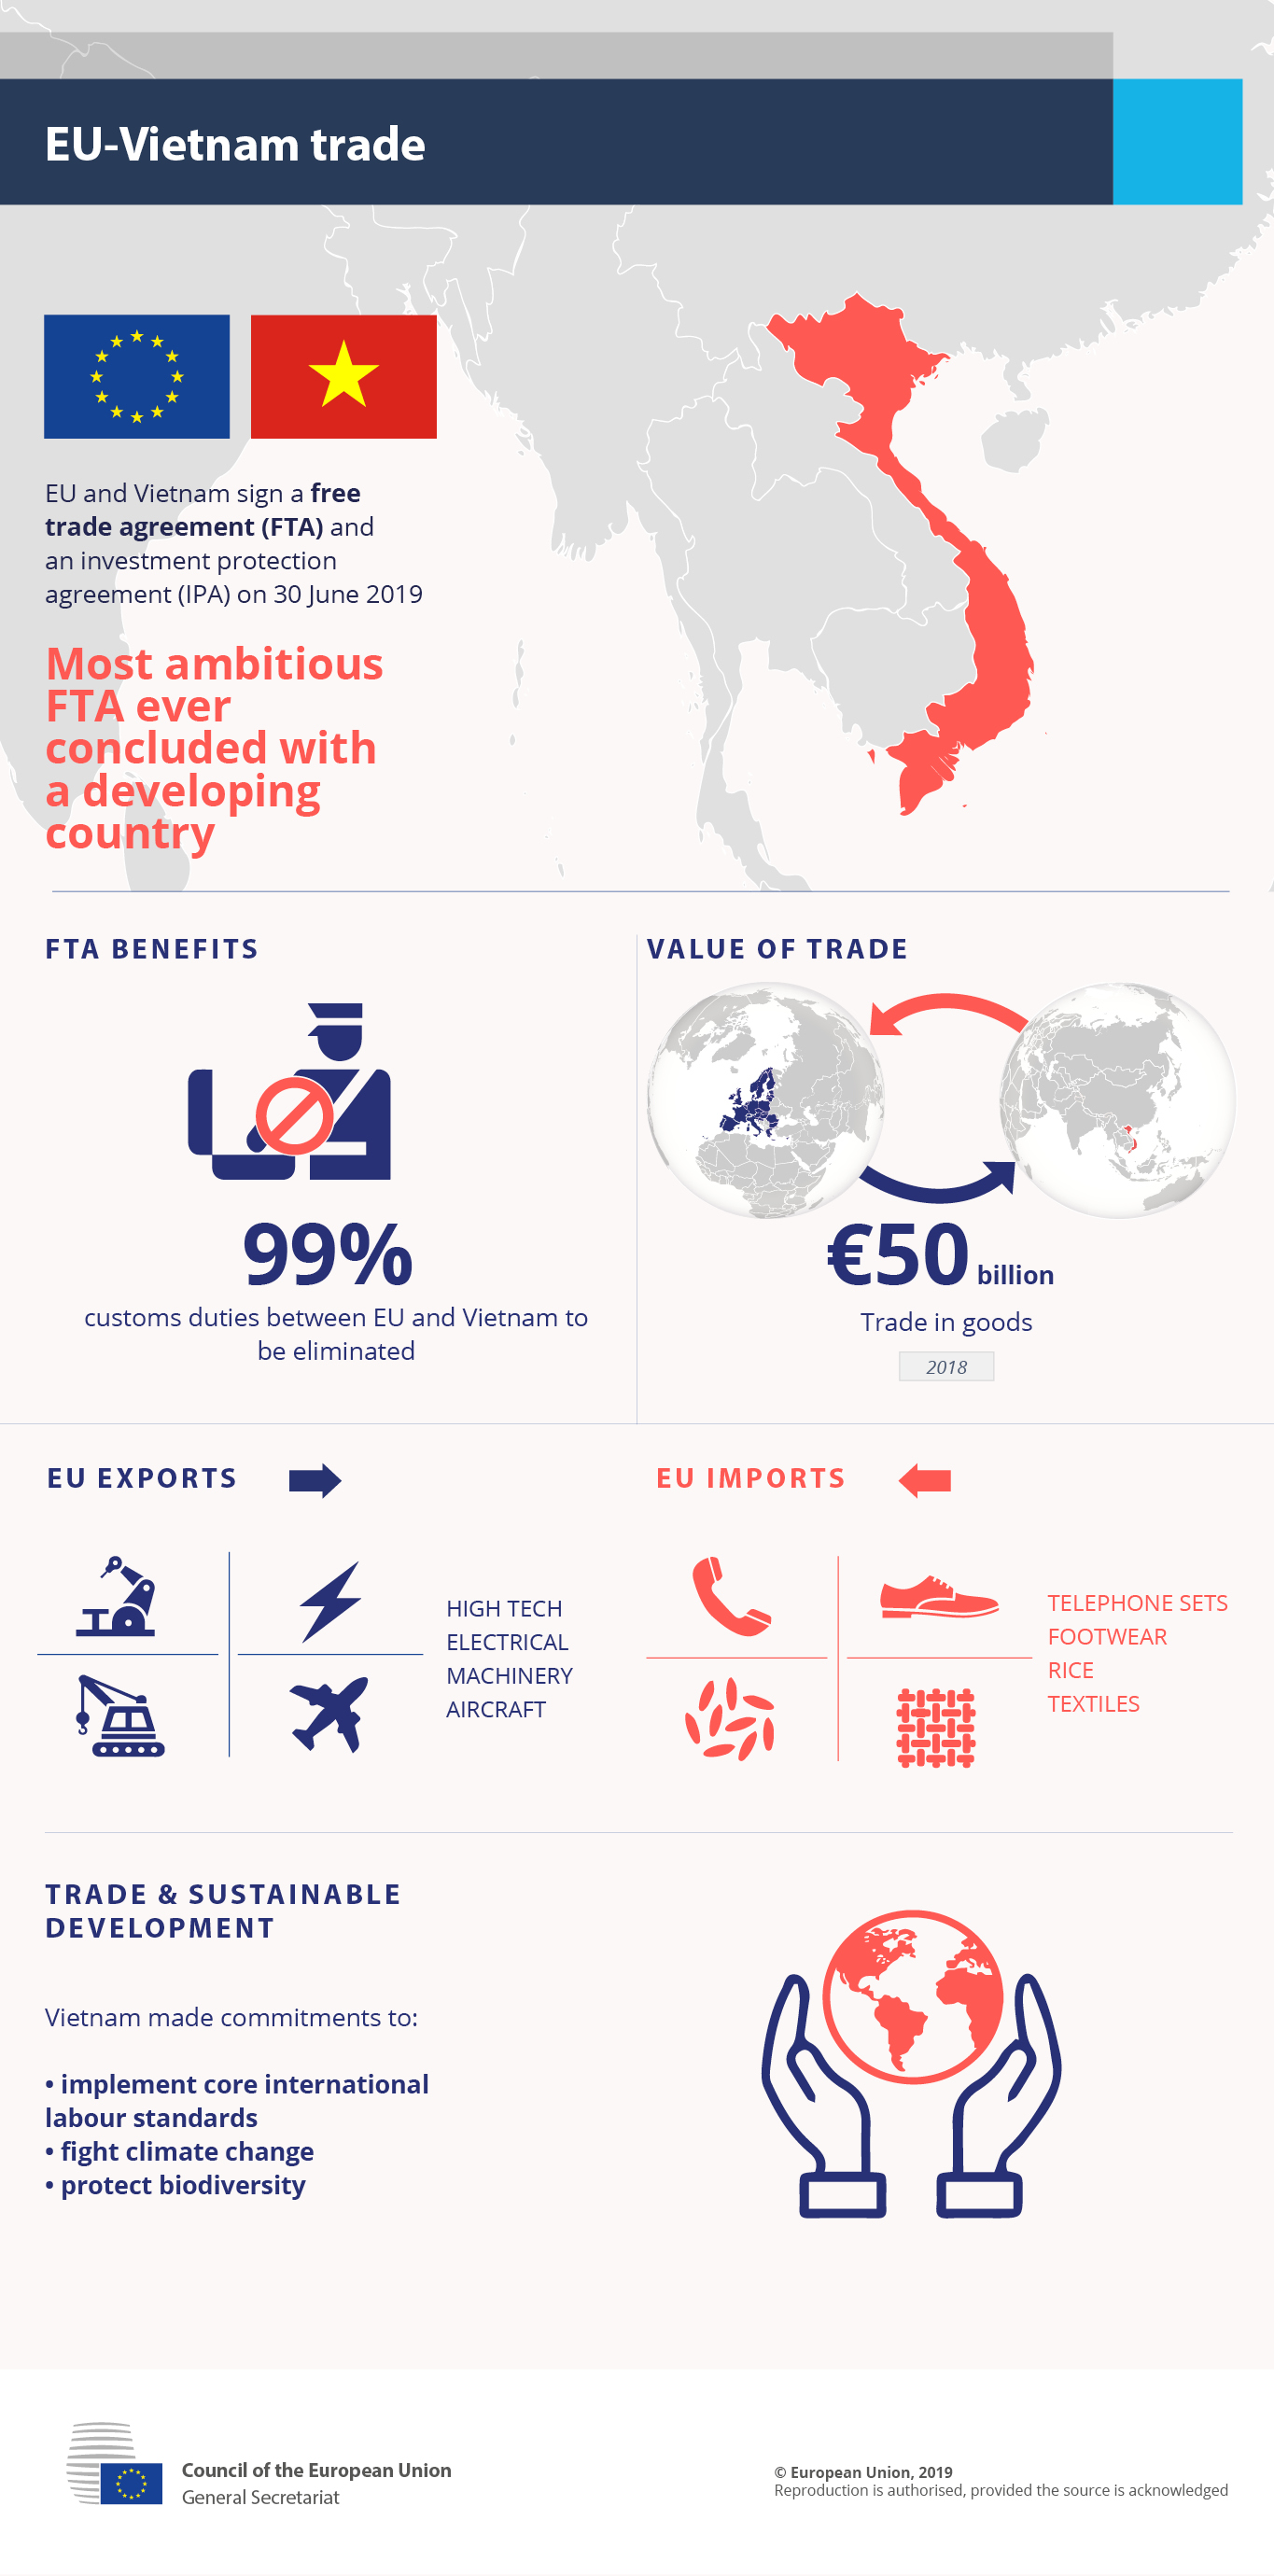 Nghị viện châu Âu phê chuẩn hiệp định thương mại EVFTA với Việt Nam